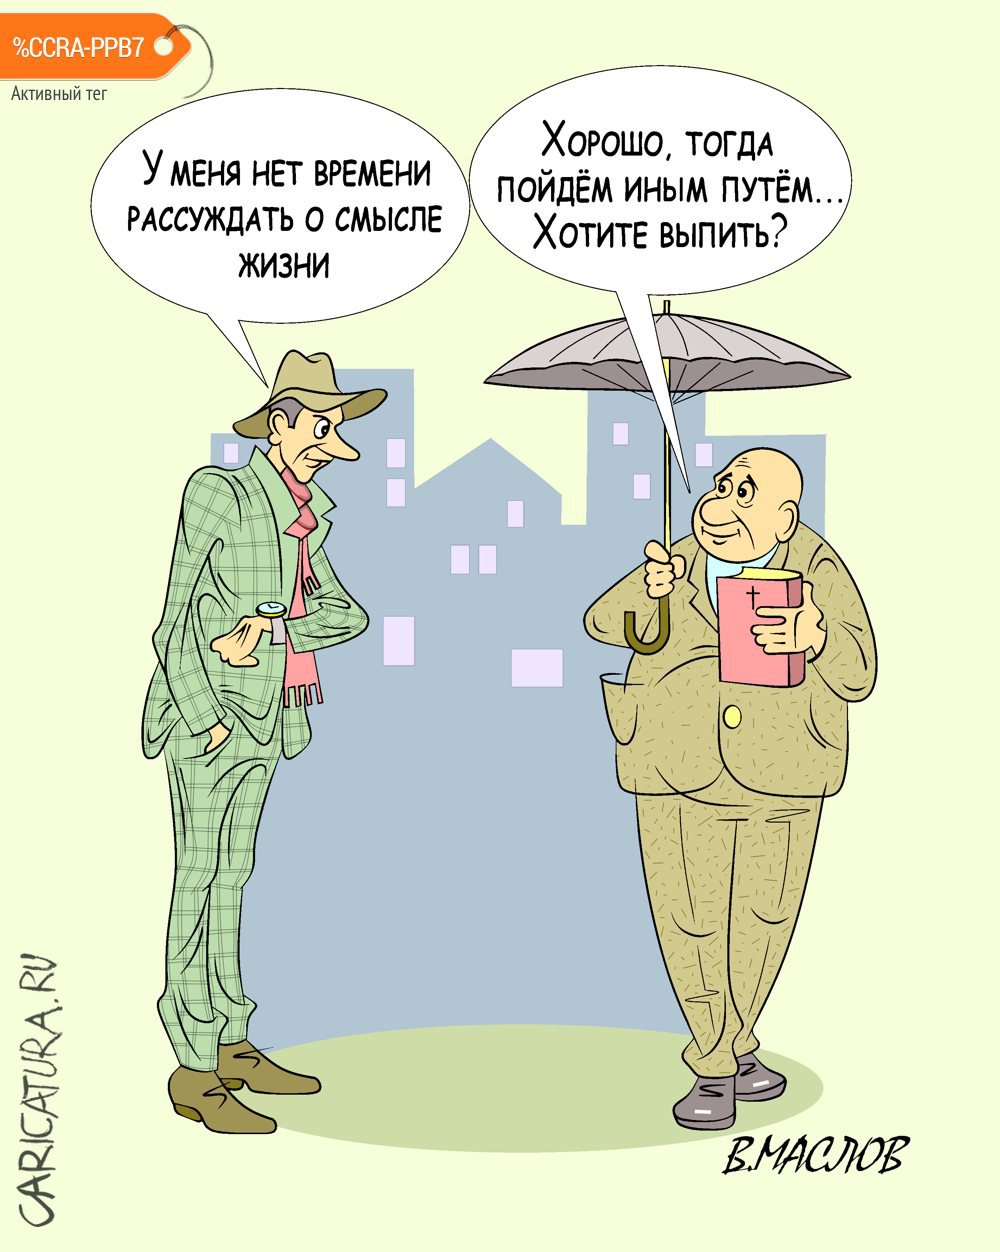 Карикатура "Предложение, от которого не смог отказаться", Виталий Маслов